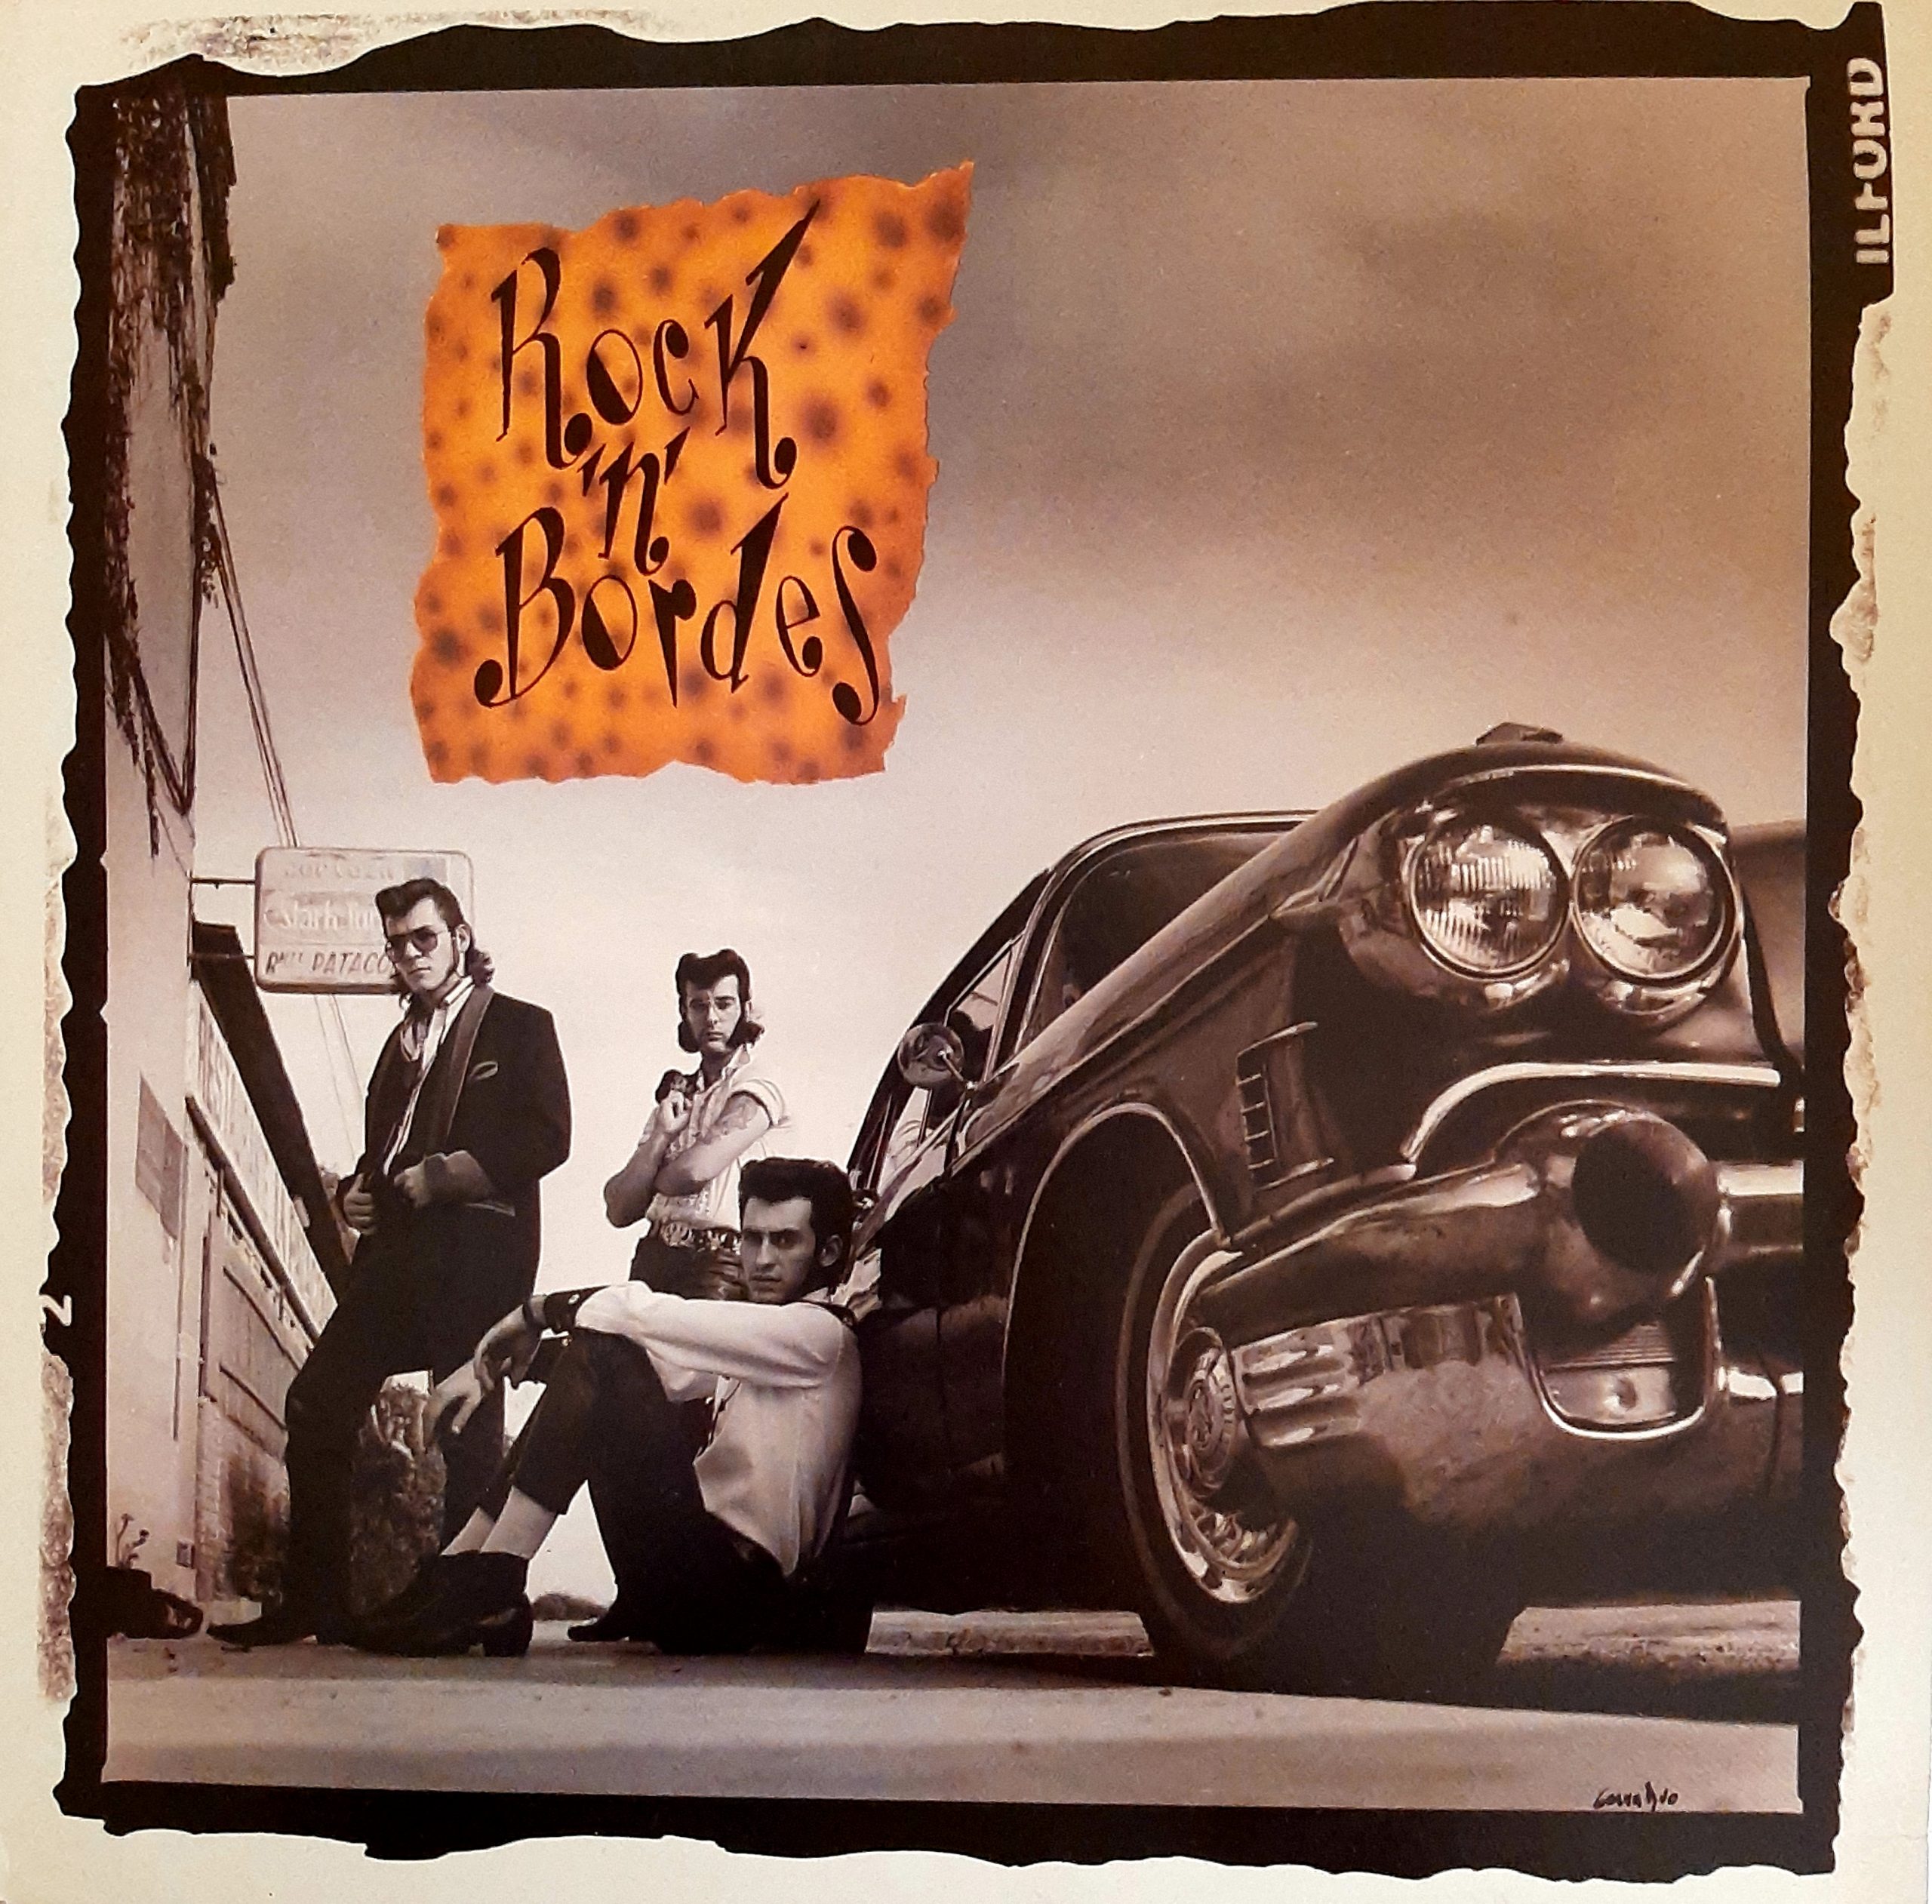 Portada del debut de Rock ’n’ Bordes en 1988